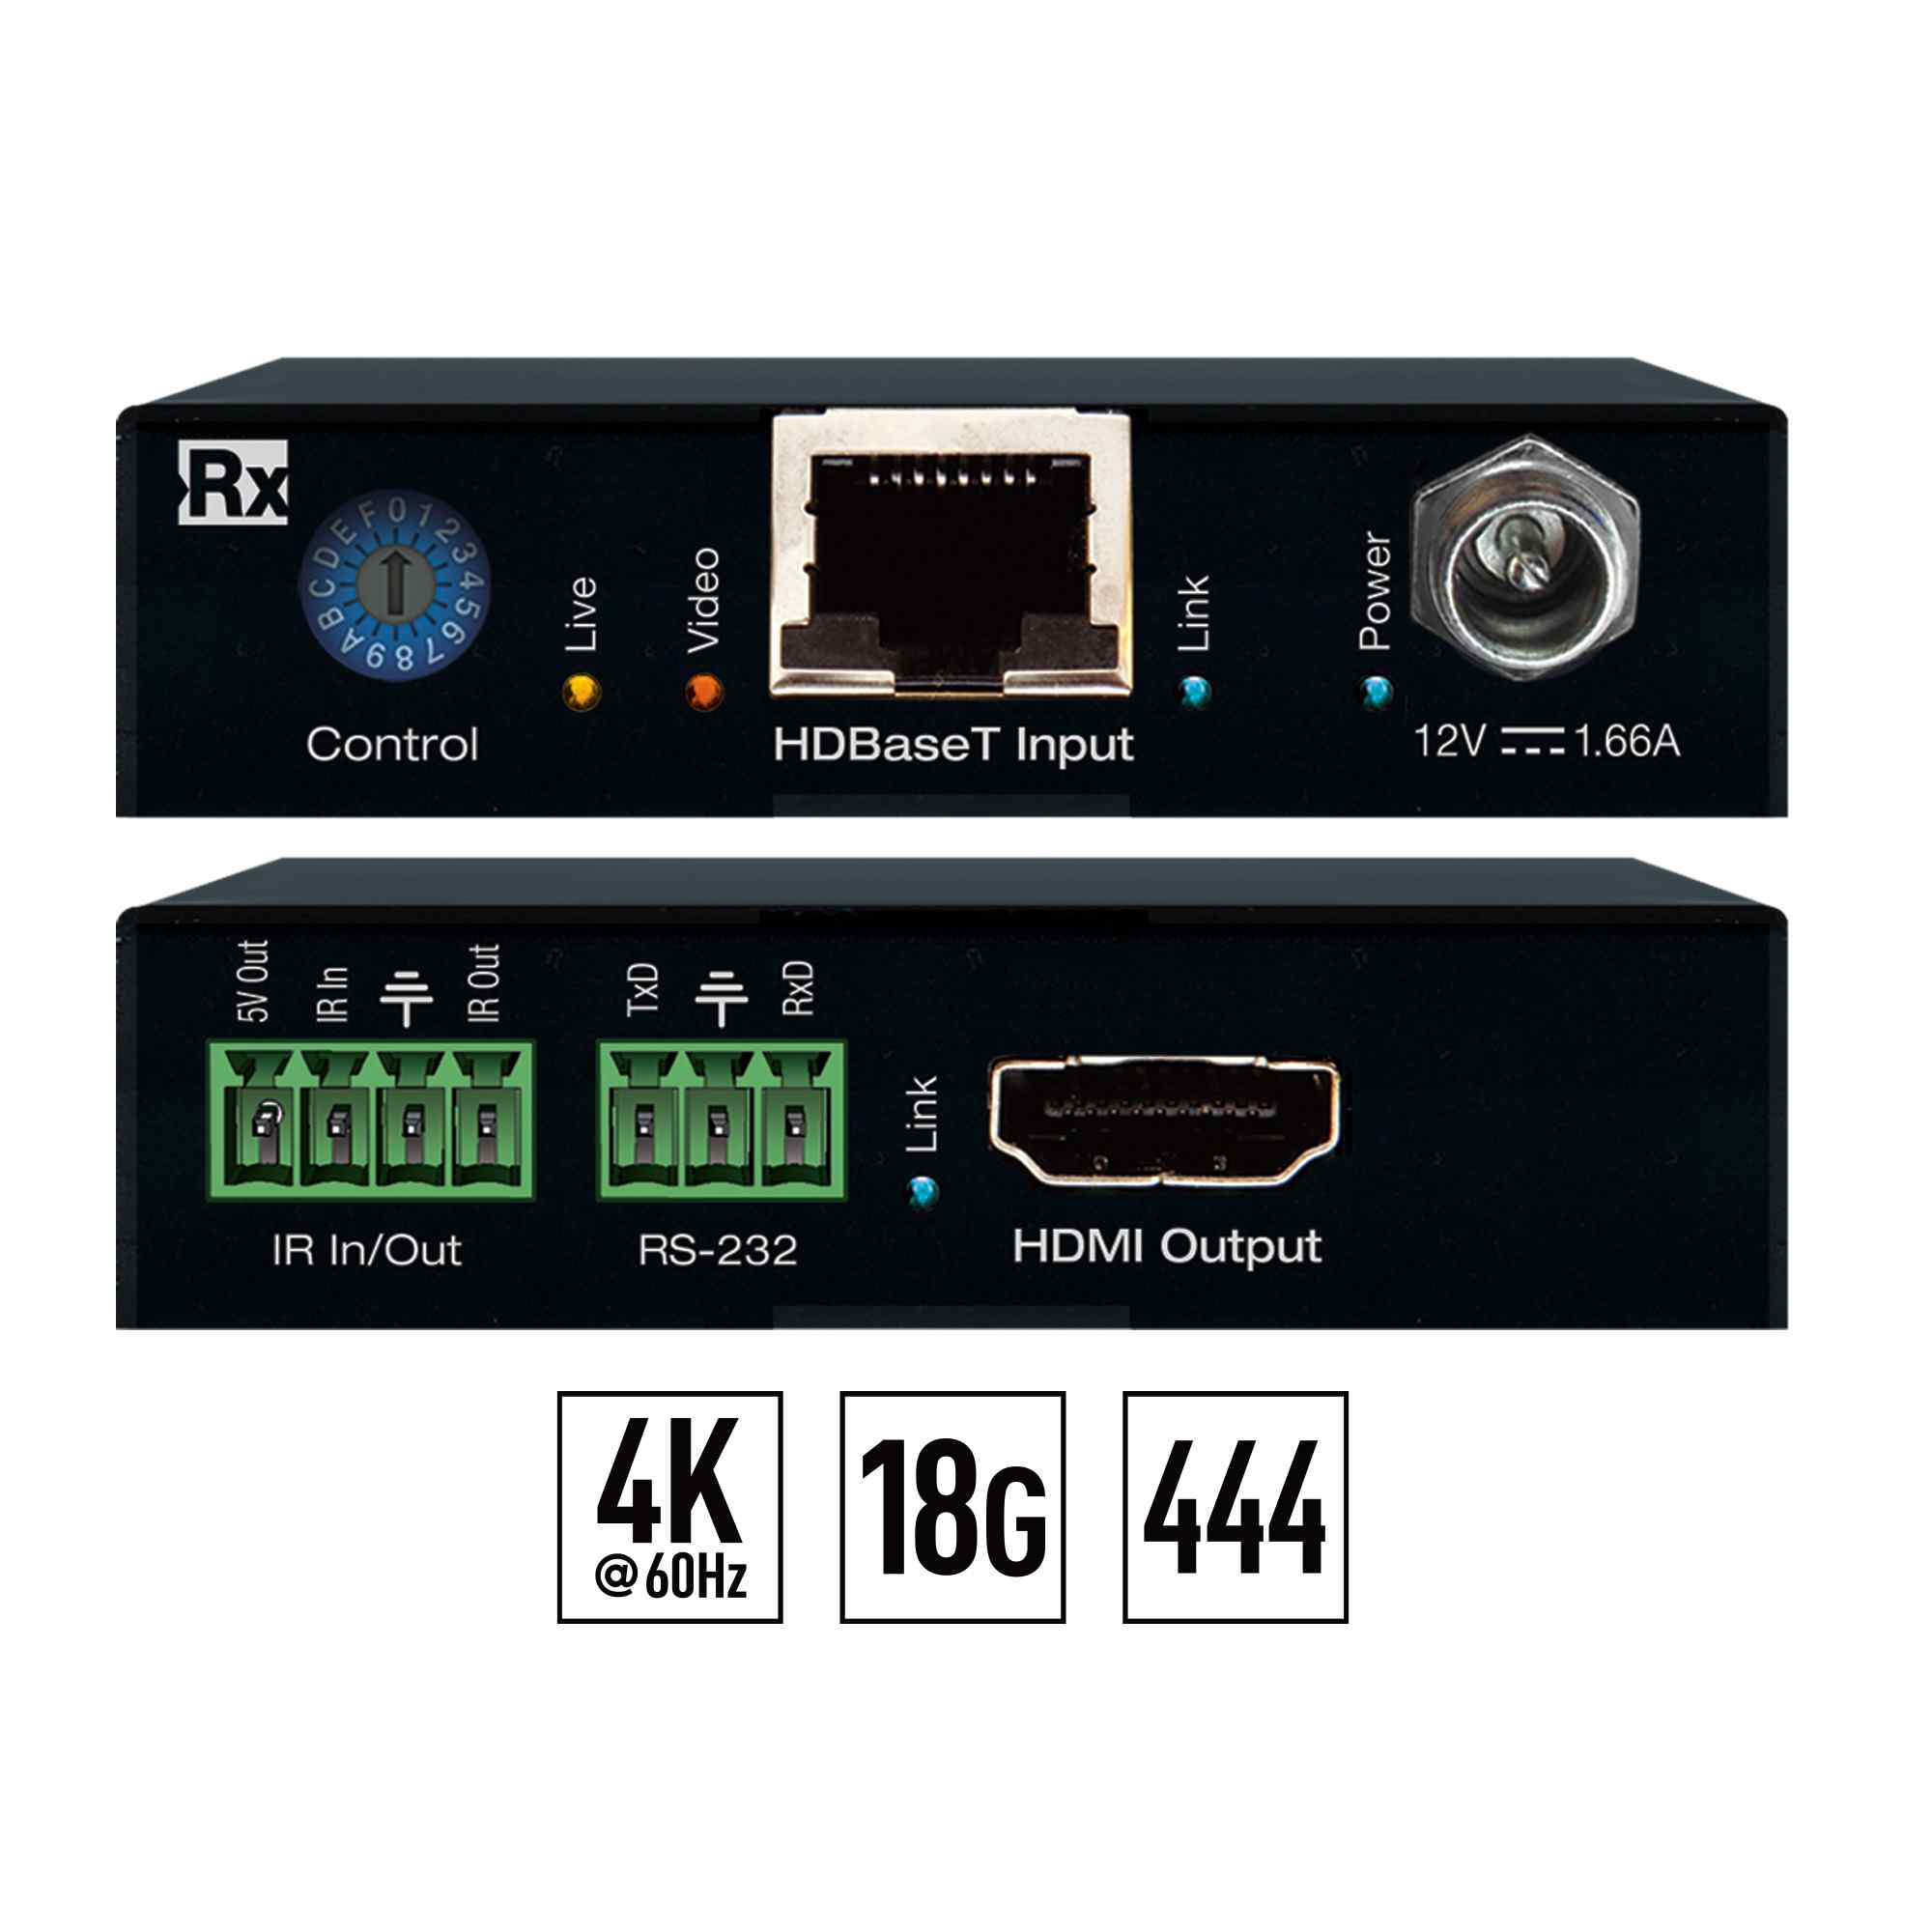 Key Digital HDBaseT 4K/18G POH/HDMI Extenders (Includes KIT TX/RX 4K/40Meters 1080P/70Meters)  - KD-X444S